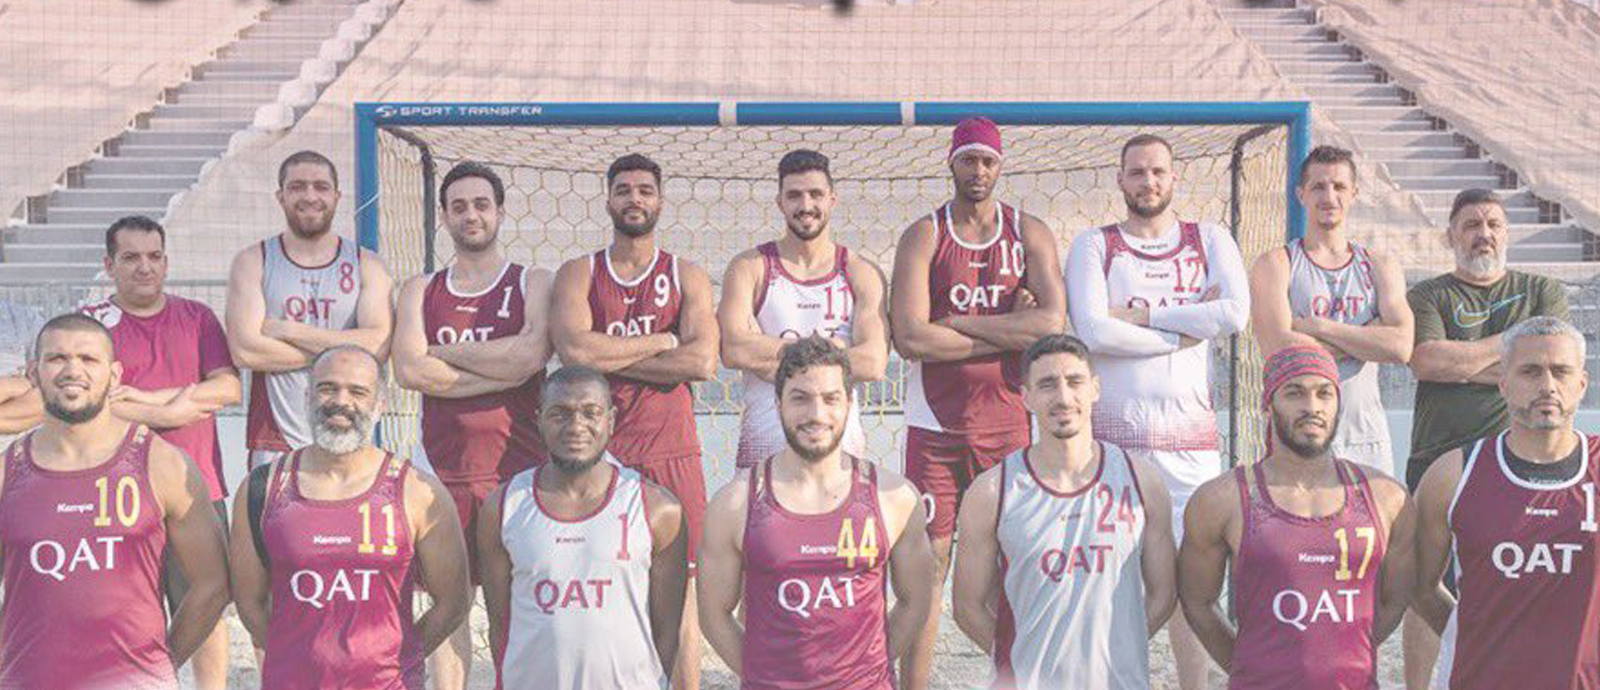 Qatar’s beach handball team